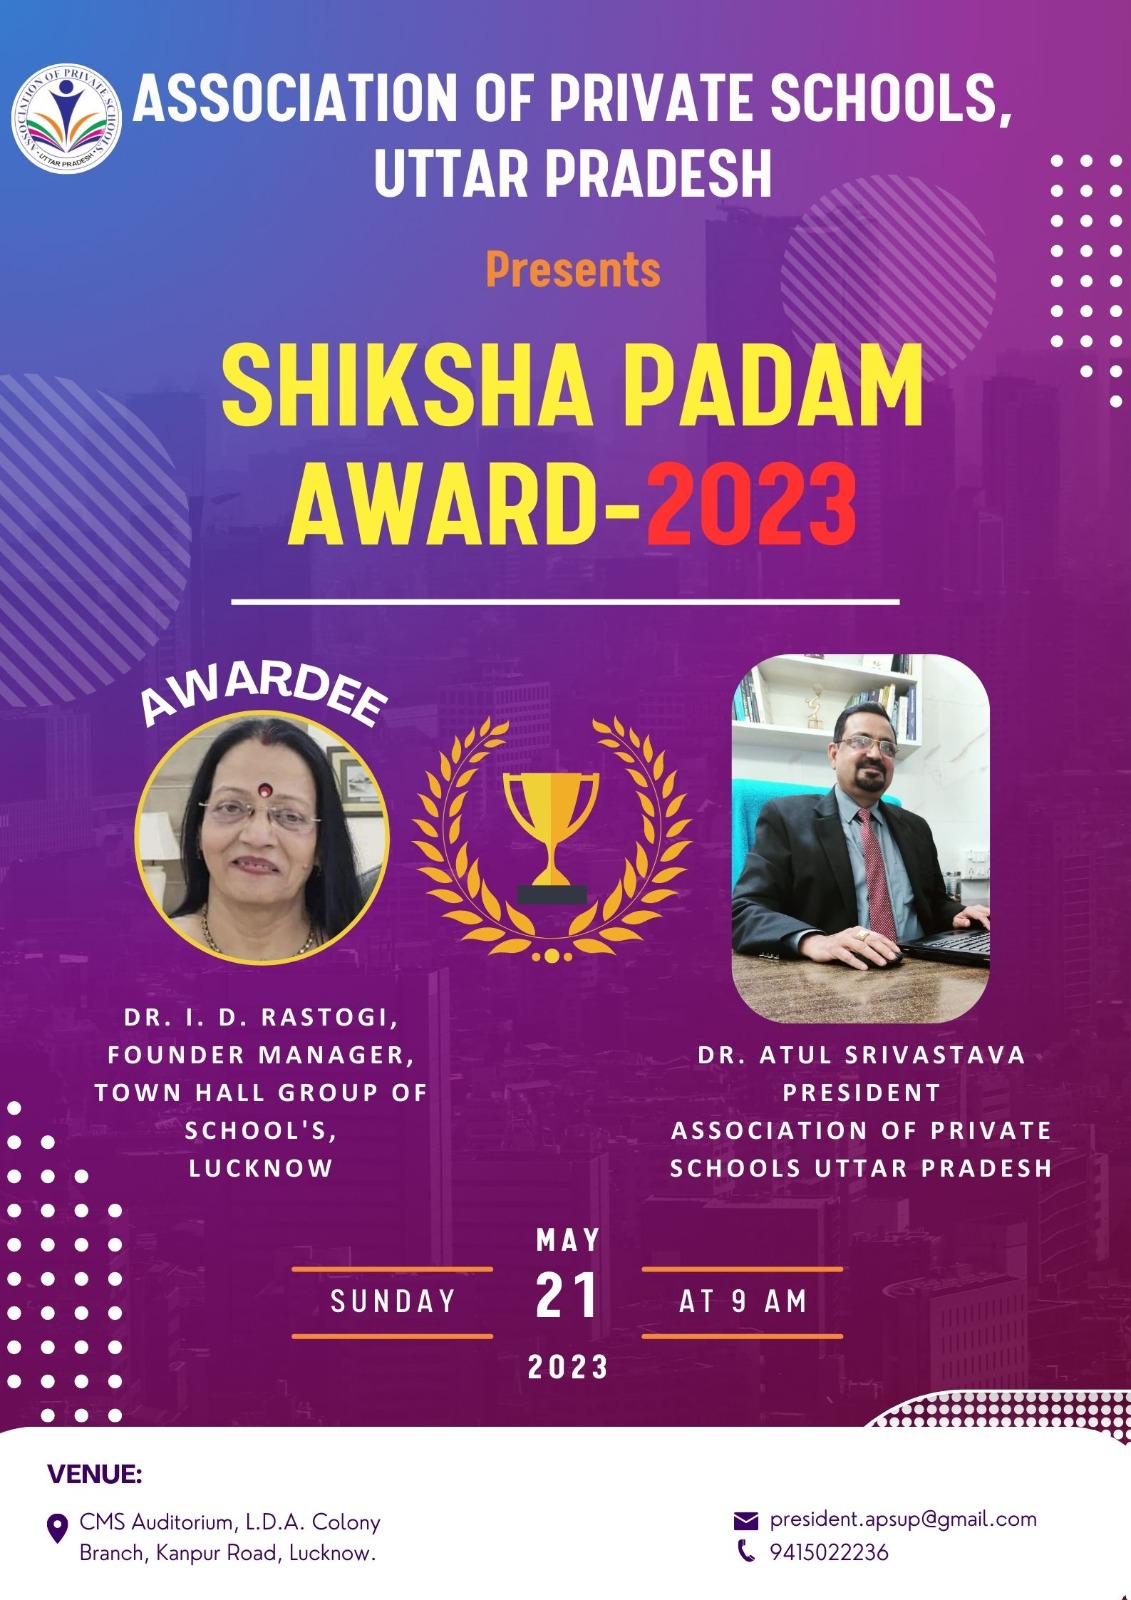 Shiksha Padam Award